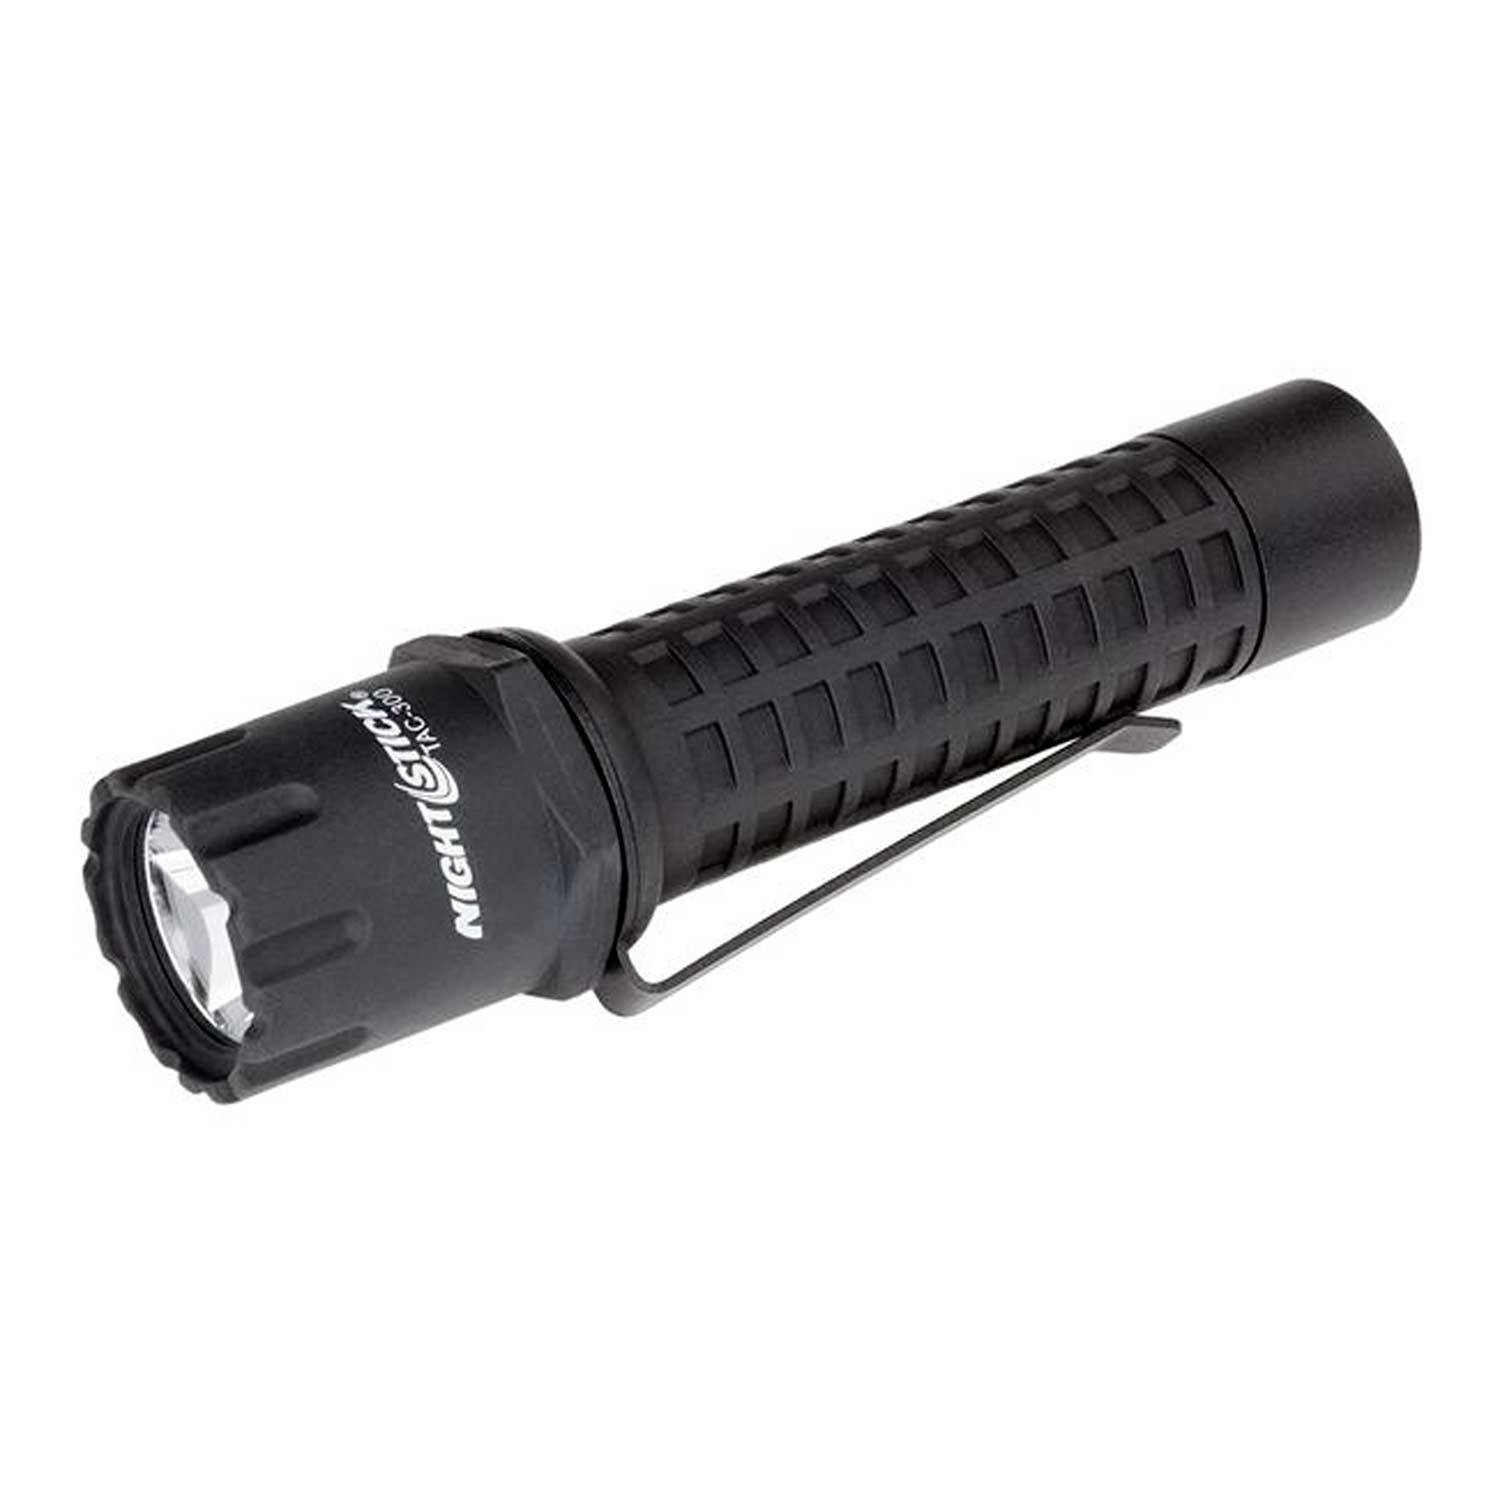 nightstick tactical flashlight Off 69% - www.gmcanantnag.net